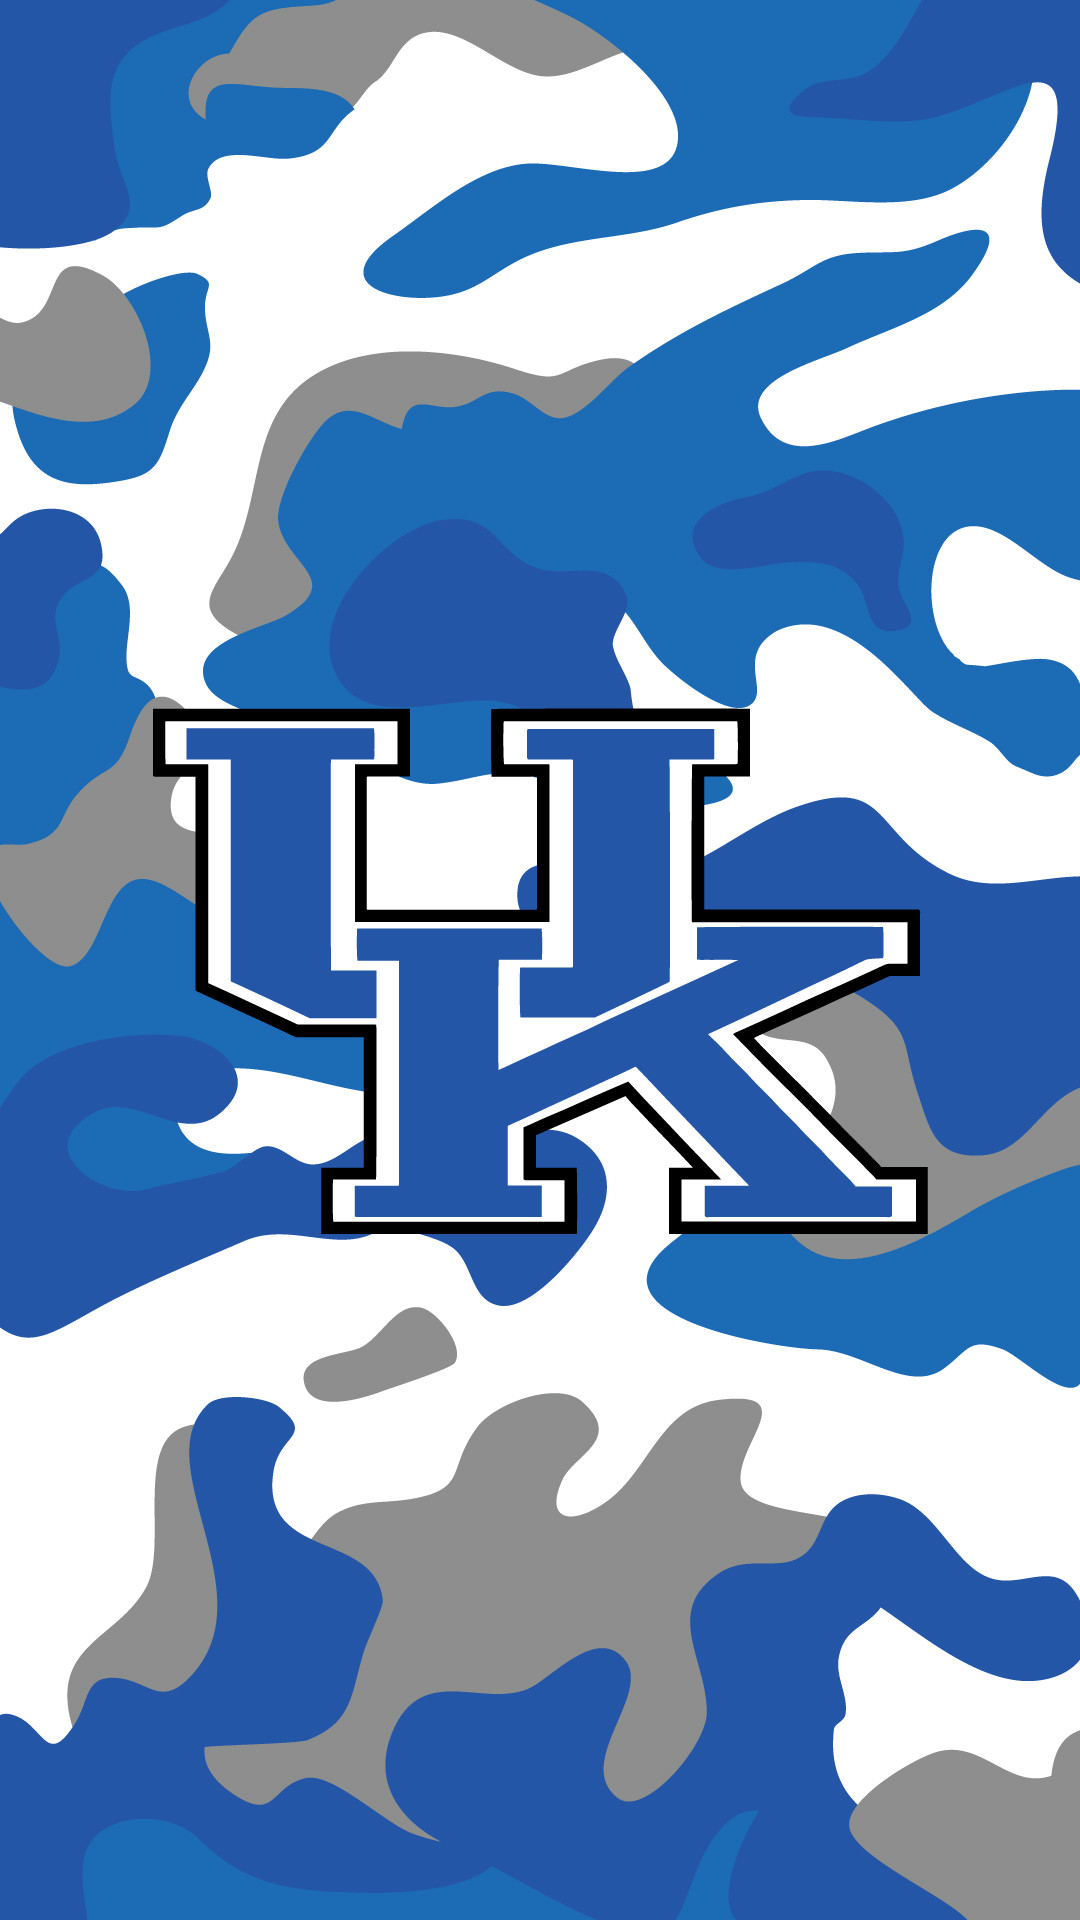 Kentucky Wildcats iPhone Wallpaper Image